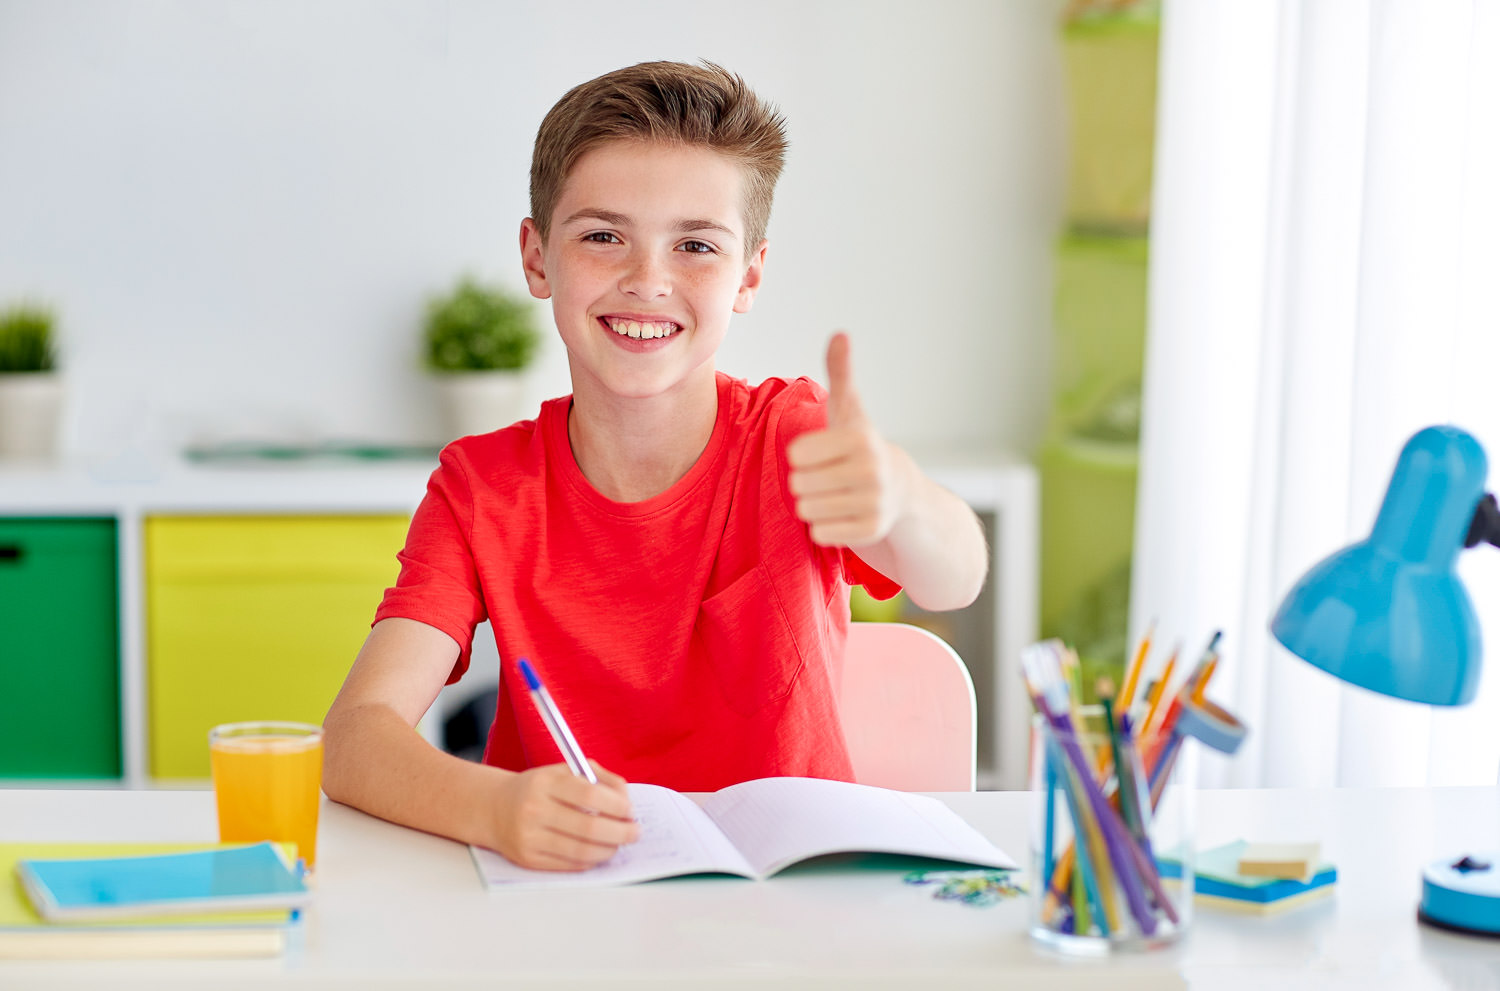 Boy smiling and enjoying dyslexia tuition